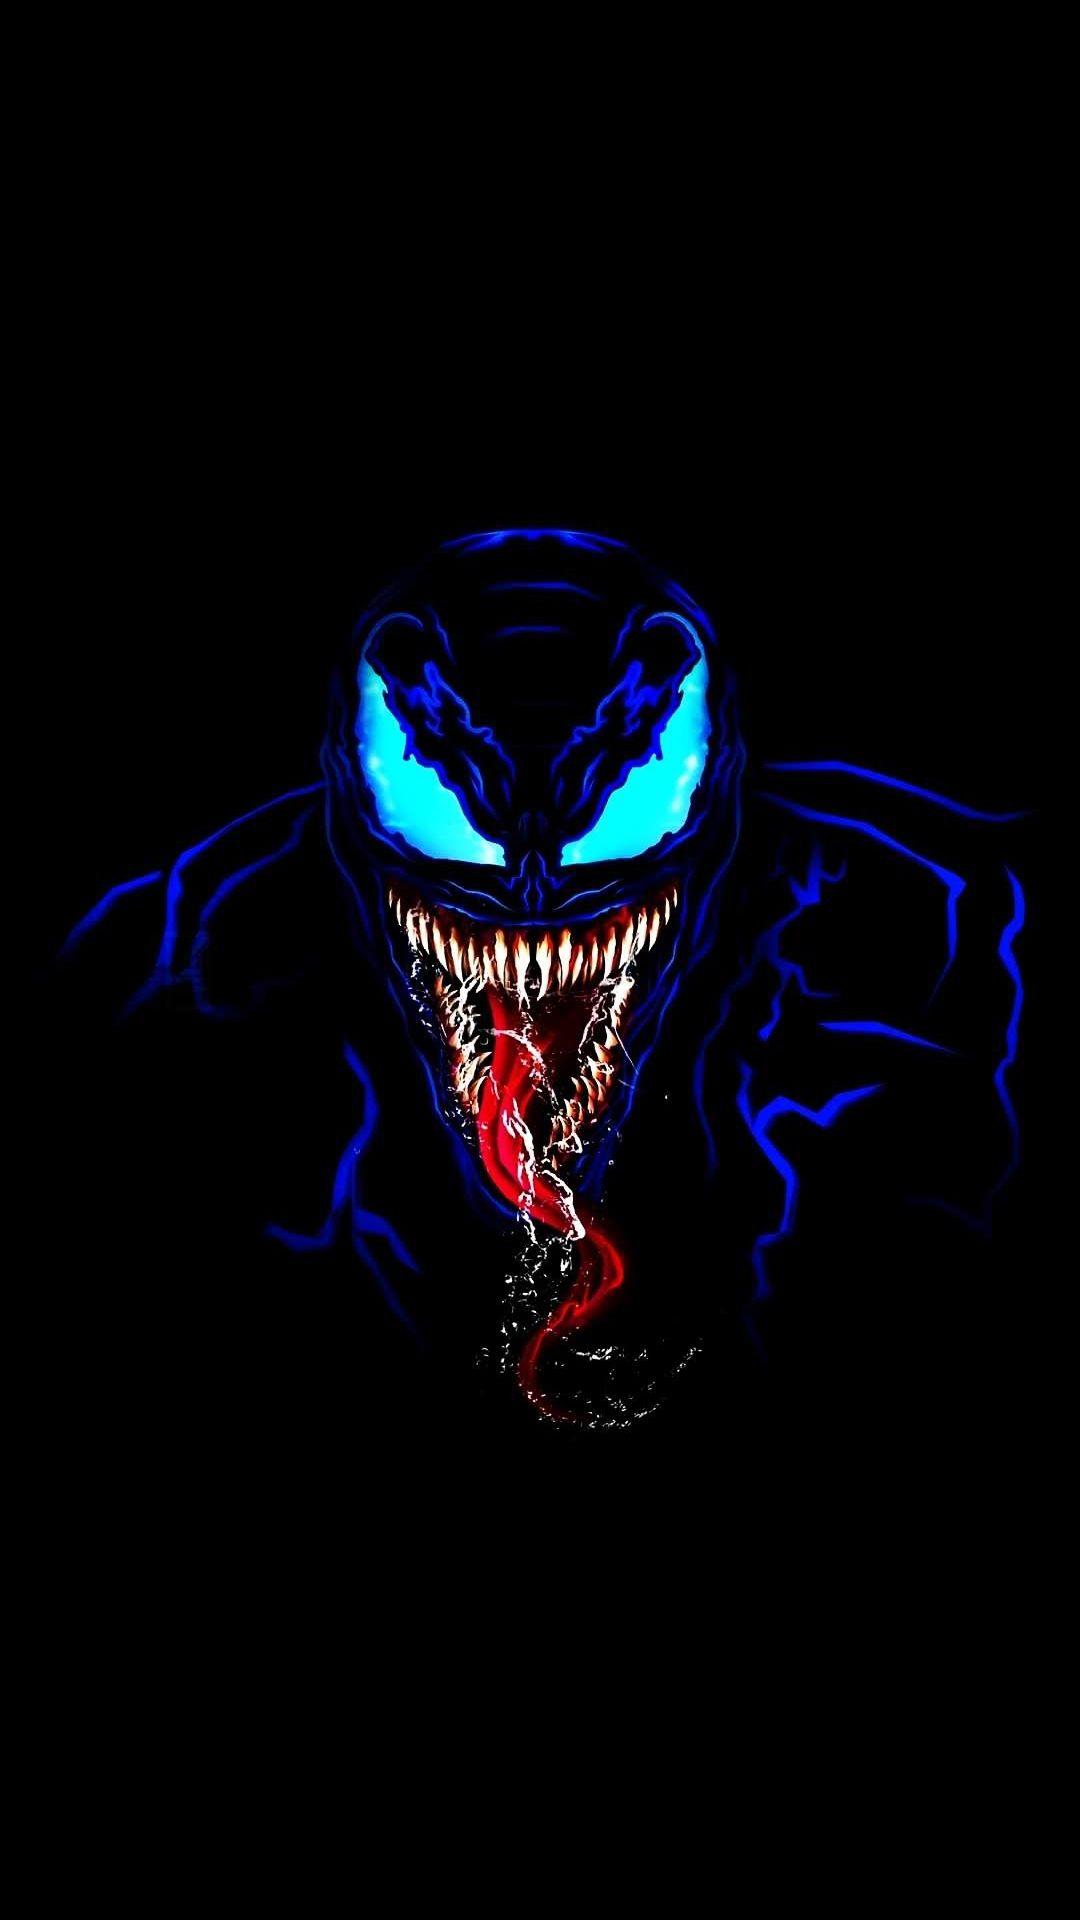 Venom in Dark iPhone Wallpaper. Venom comics, Marvel